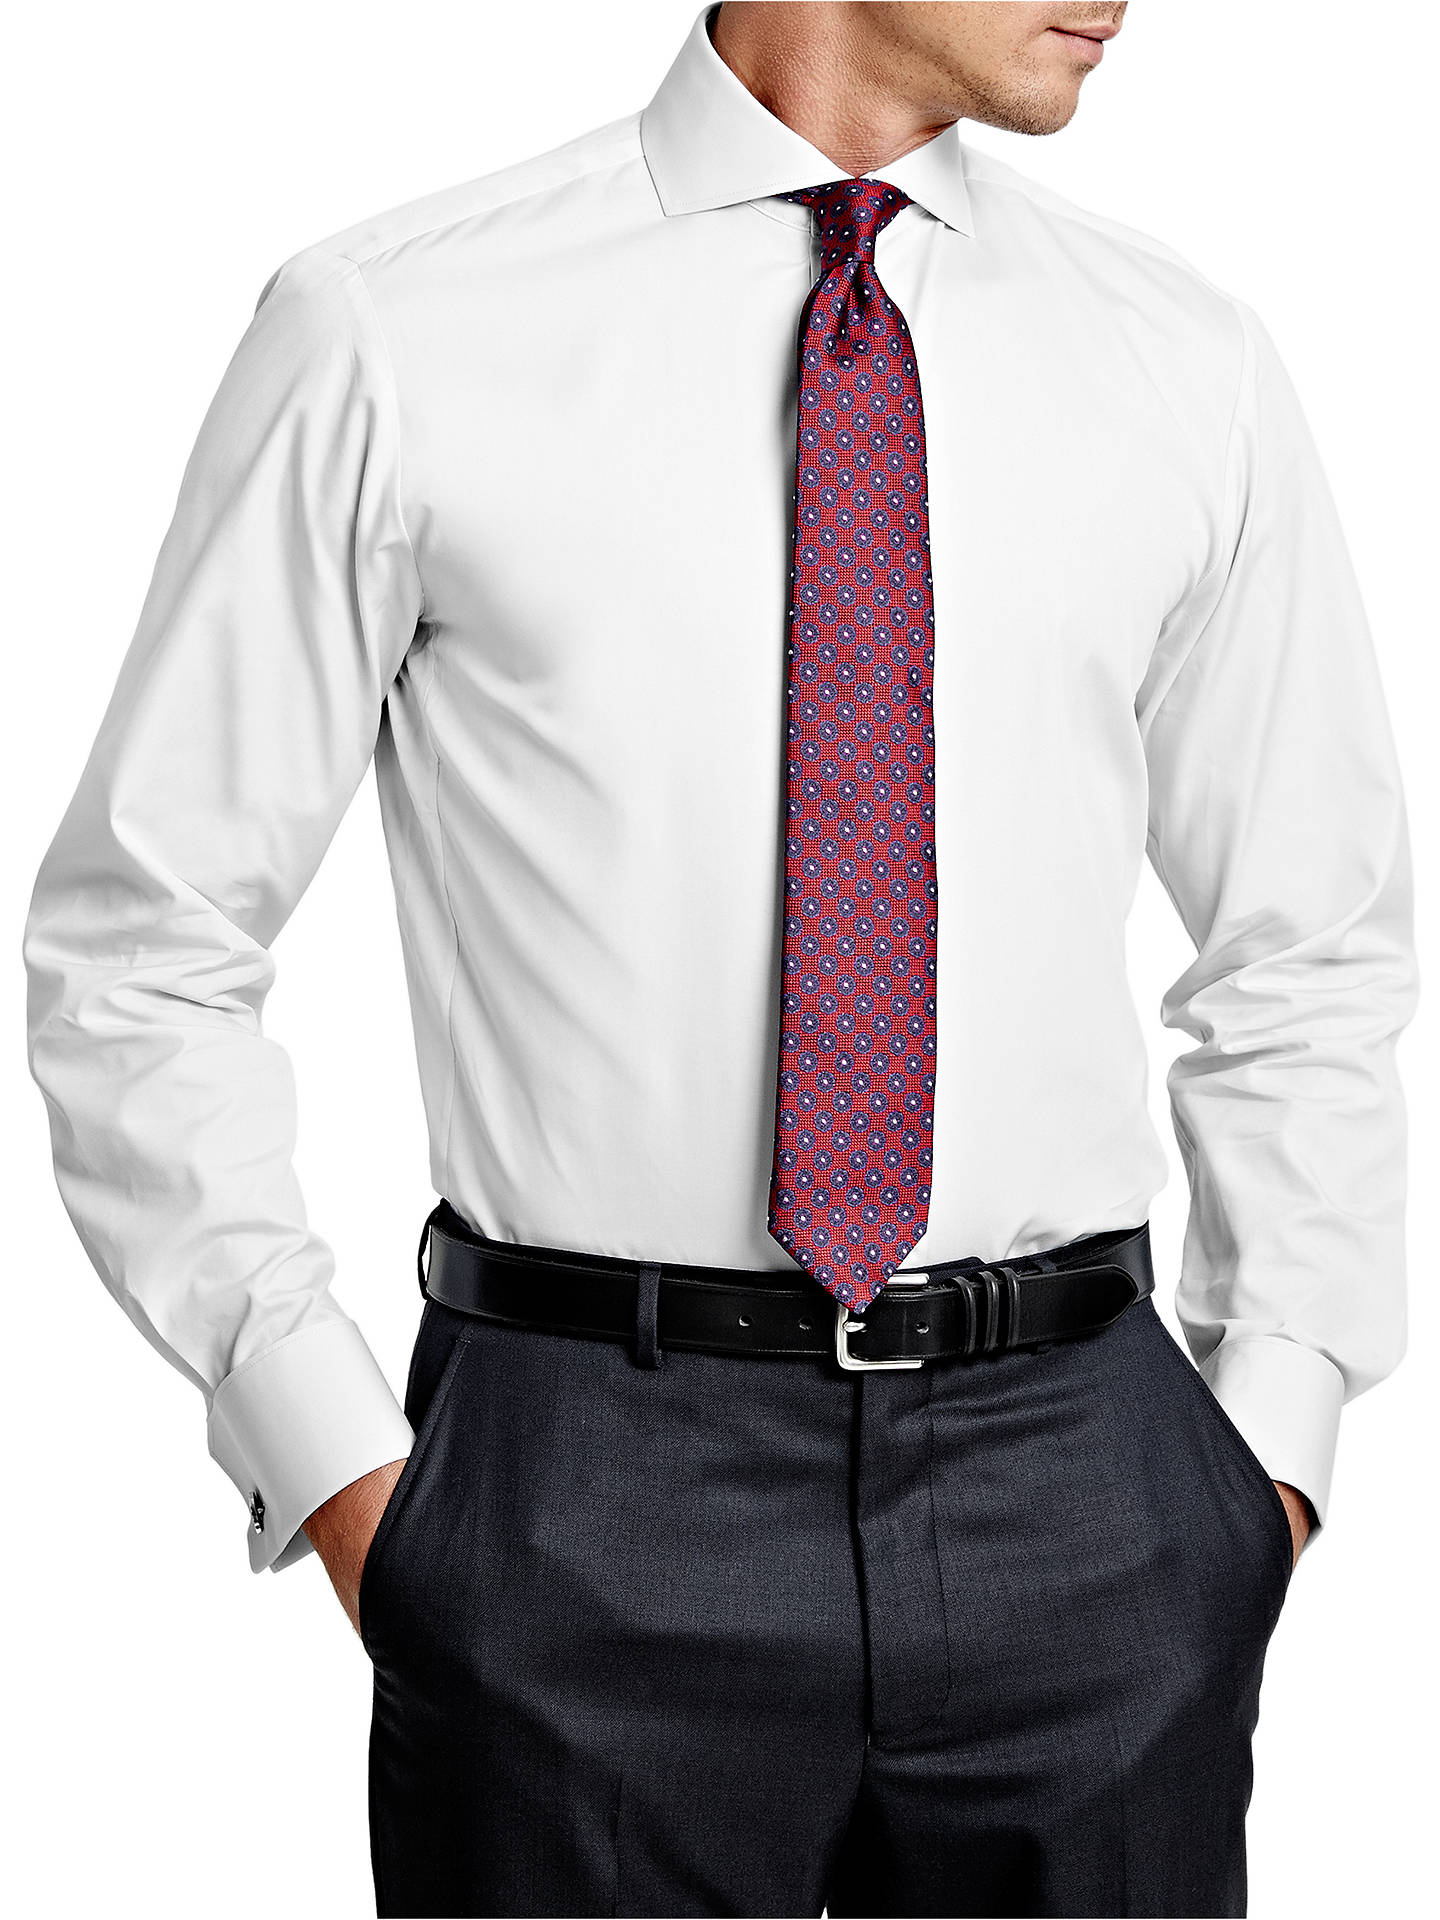 Идеальная длина галстука